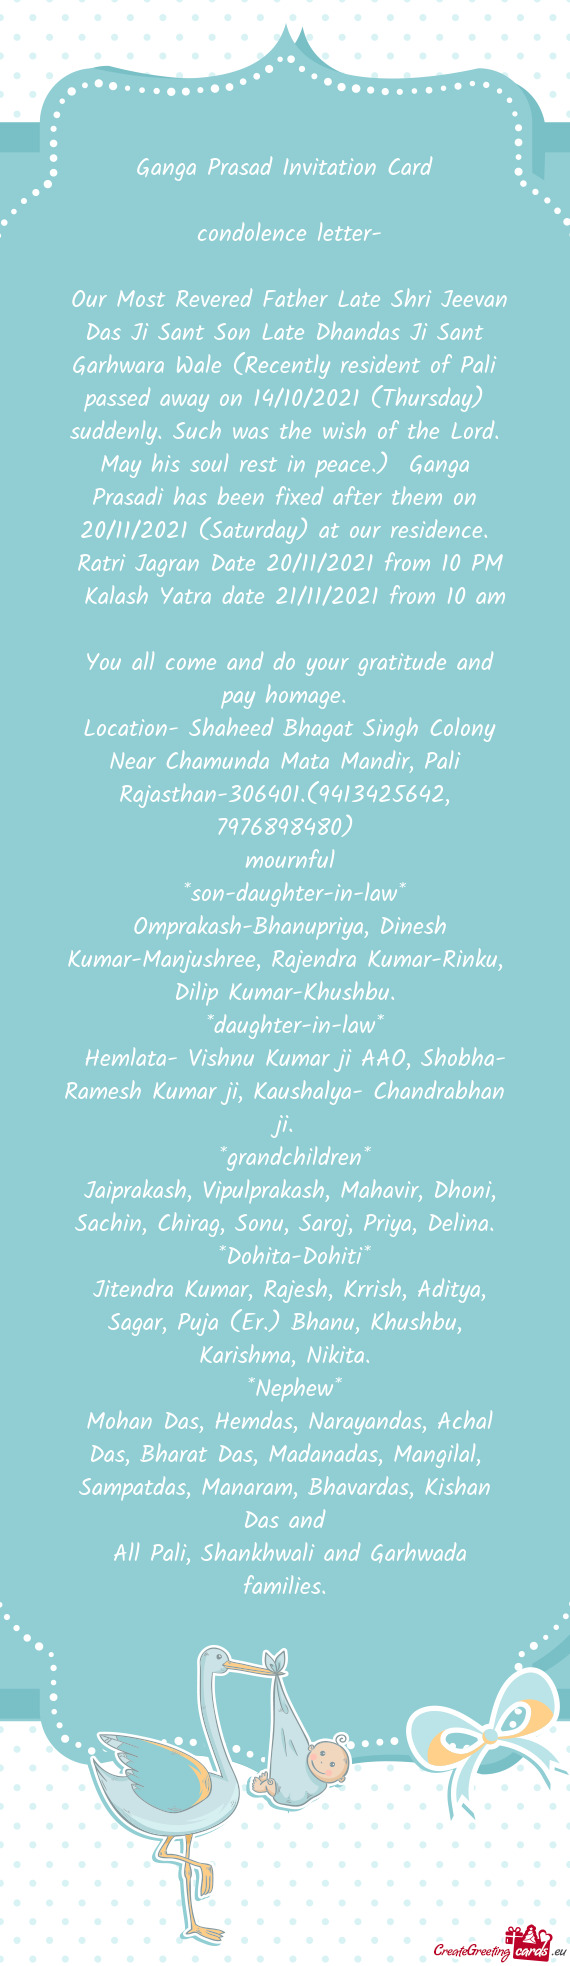 Ganga Prasad Invitation Card